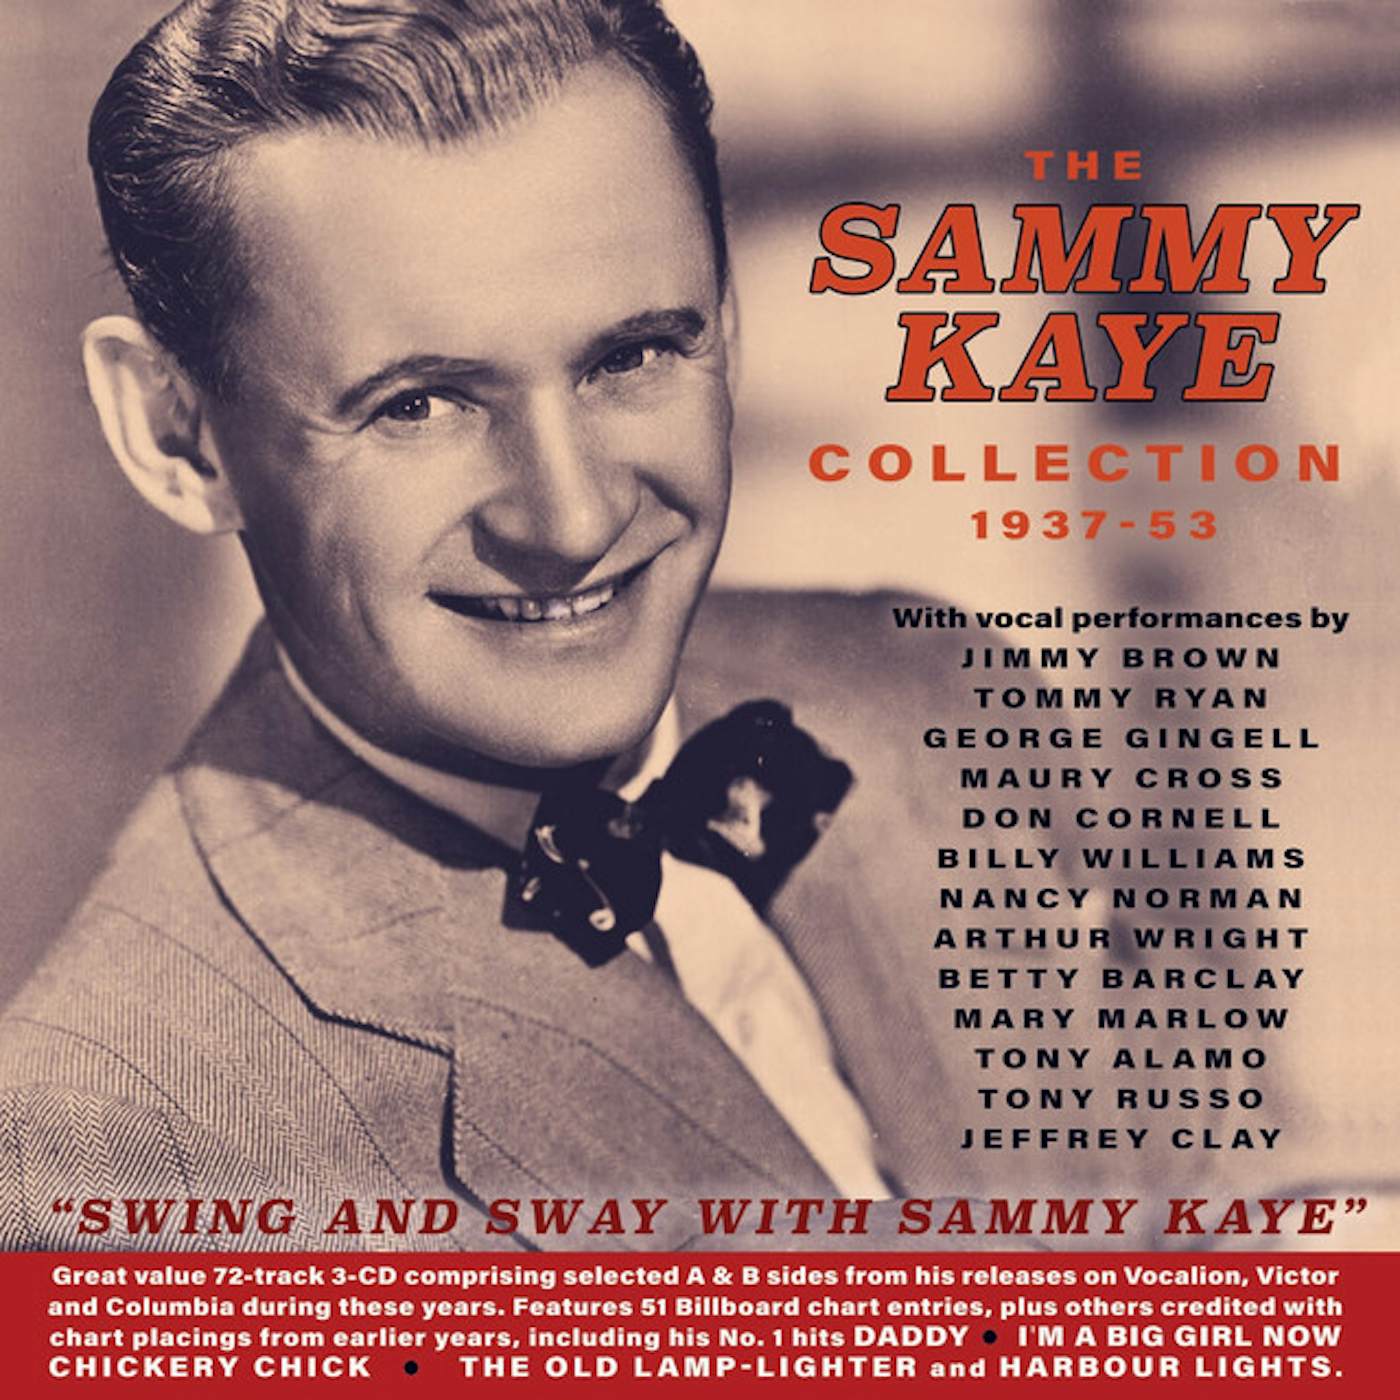 SAMMY KAYE COLLECTION 1937-53 CD